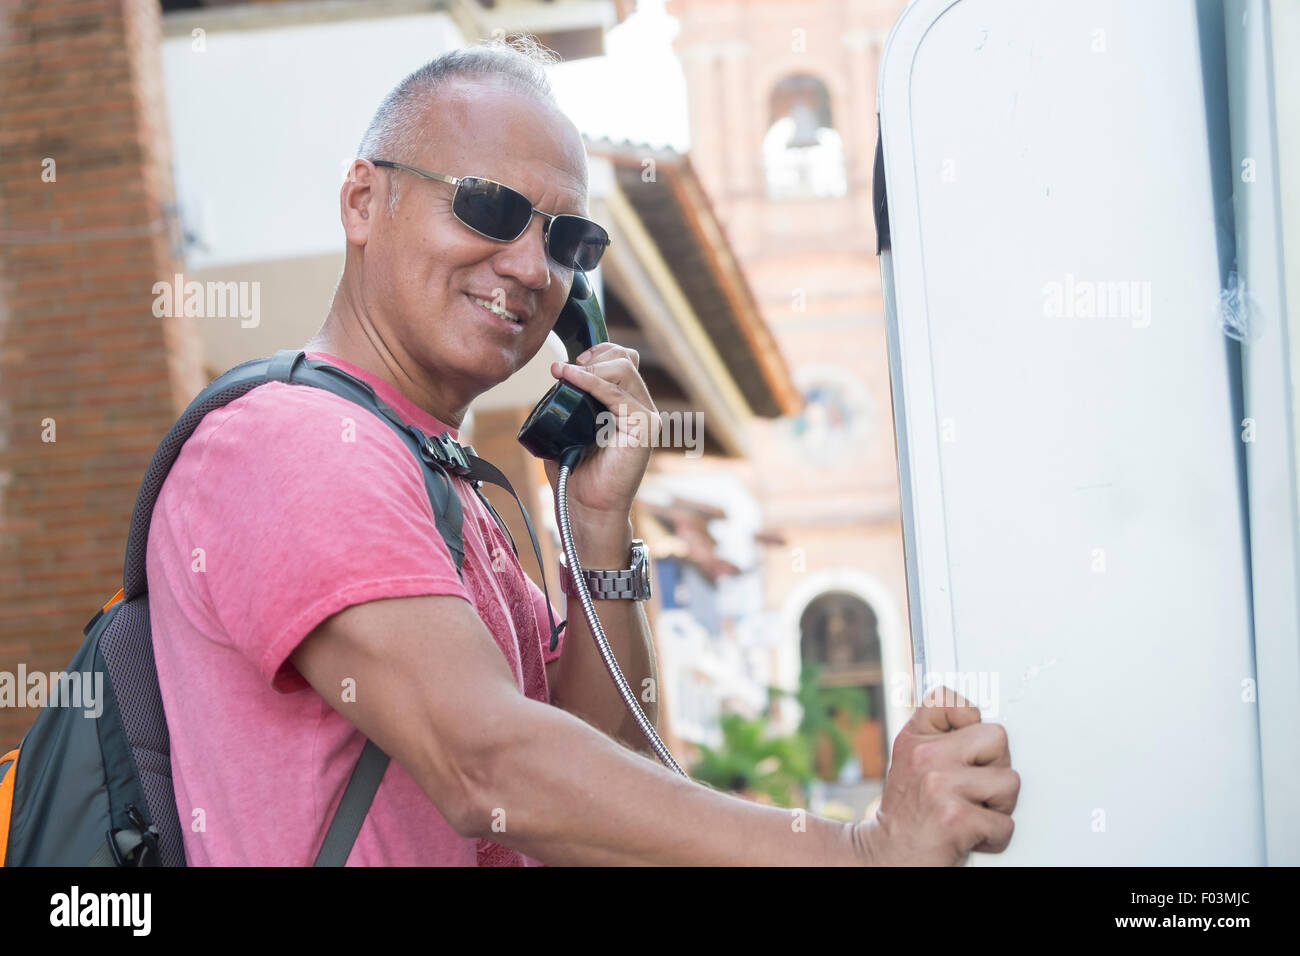 Tourismus in Puerto Vallarta, Mexiko. Mann, 55 Jahre alt, hispanische Ethnizität, Rucksack, mit öffentlichen Telefonzelle. Stockfoto